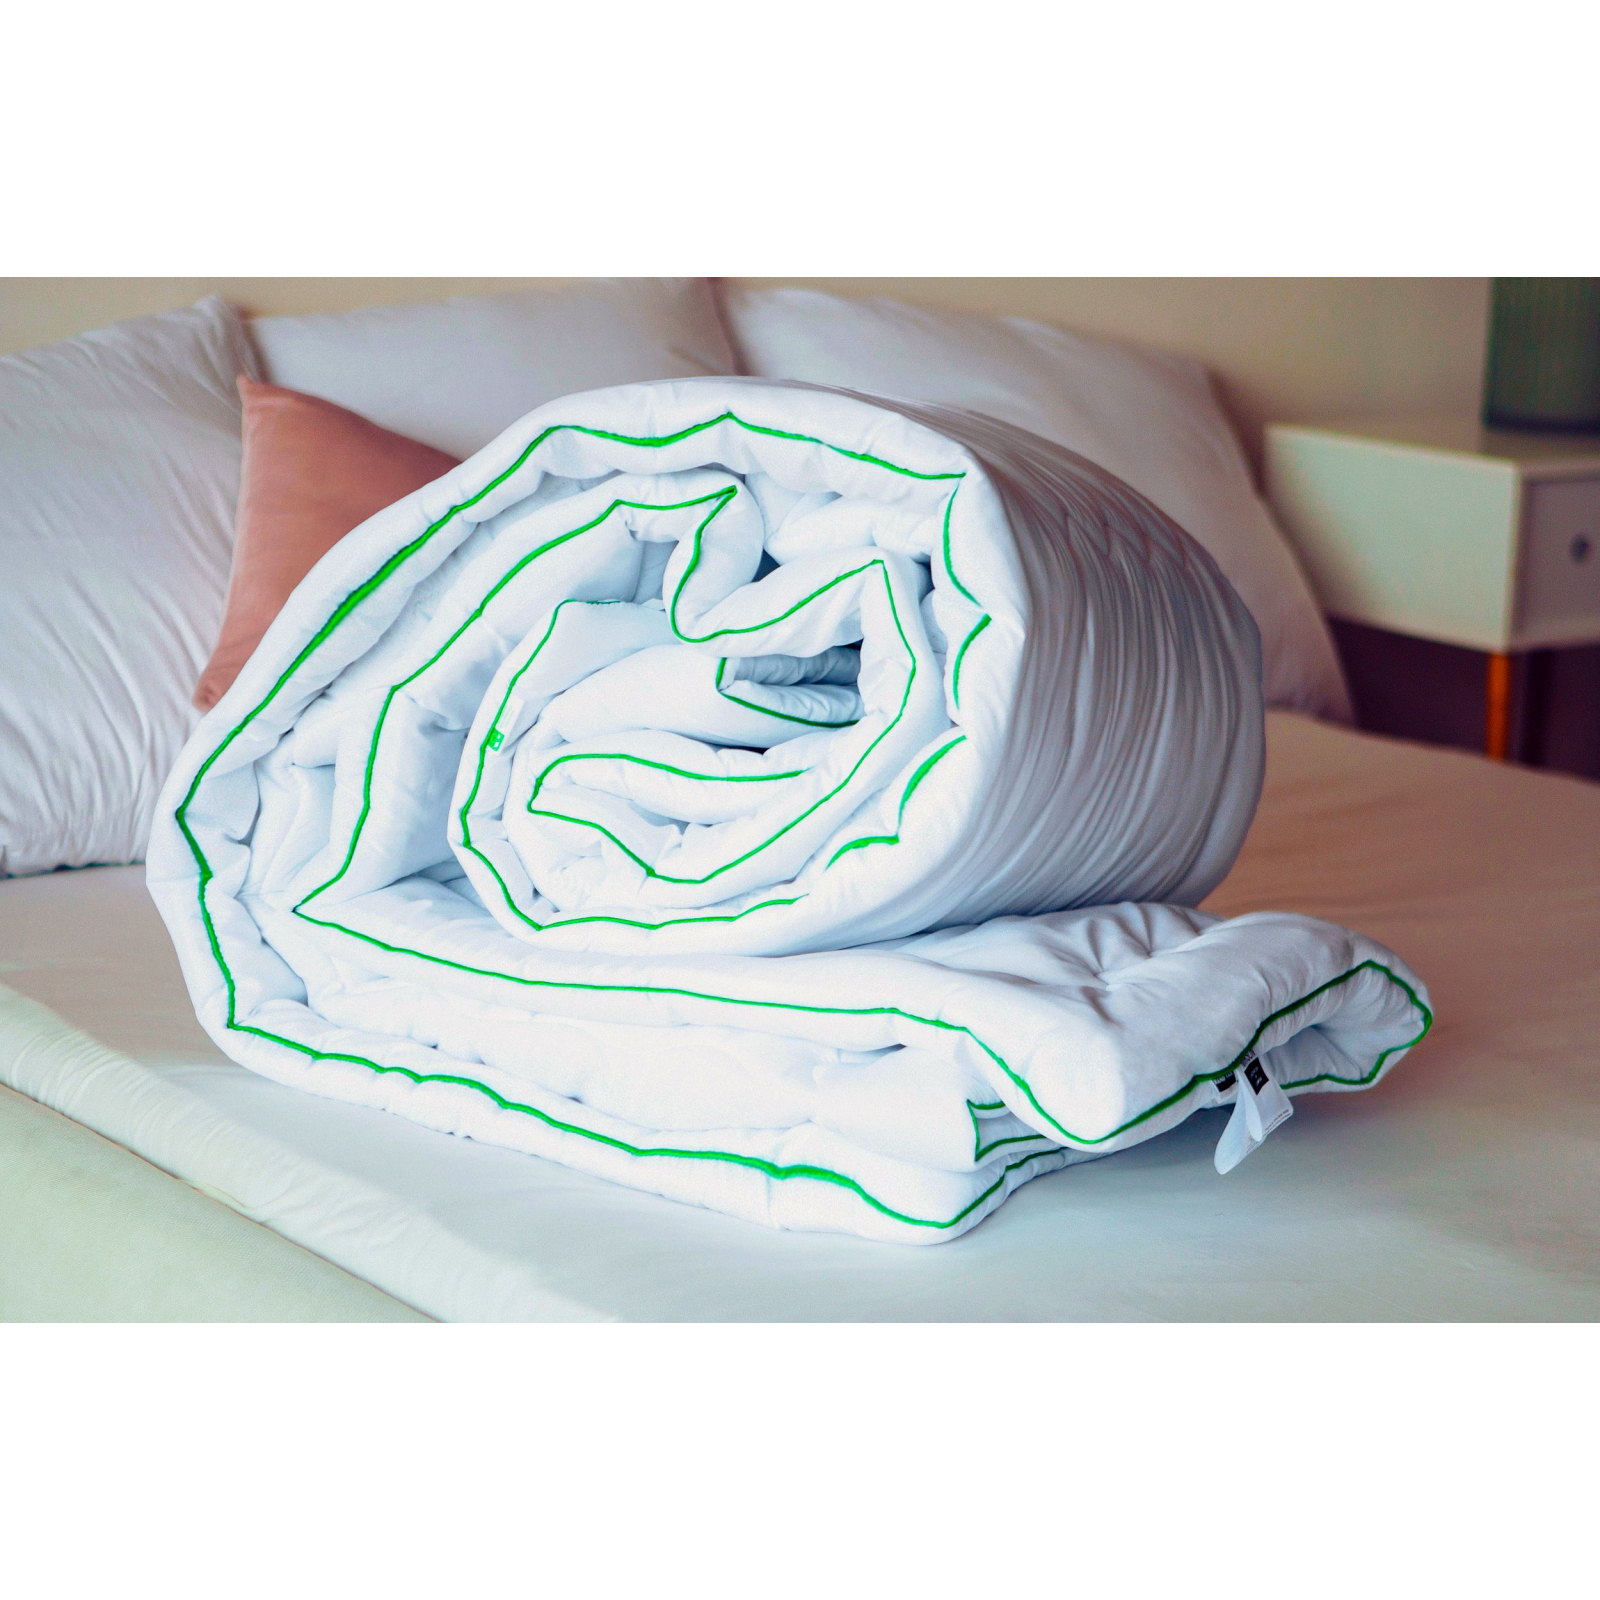 Одеяло MirSon антиаллергенное Eco Eco-Soft Hand Made 812 Деми 200x220 см (2200000621788) изображение 7